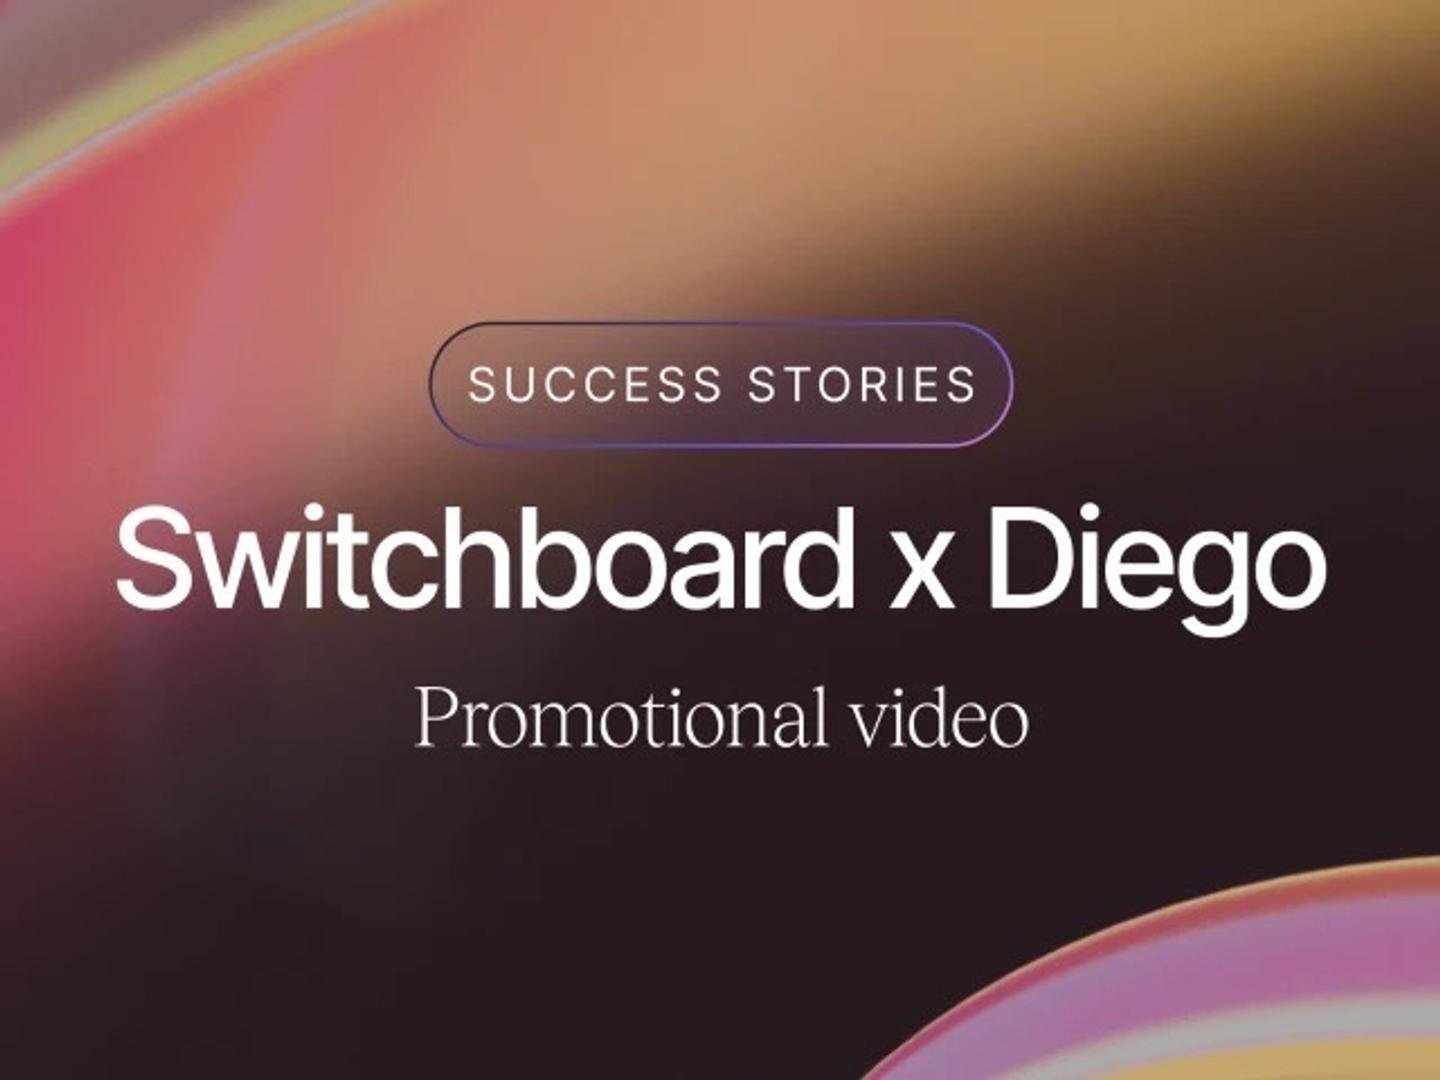 Switchboard x Diego